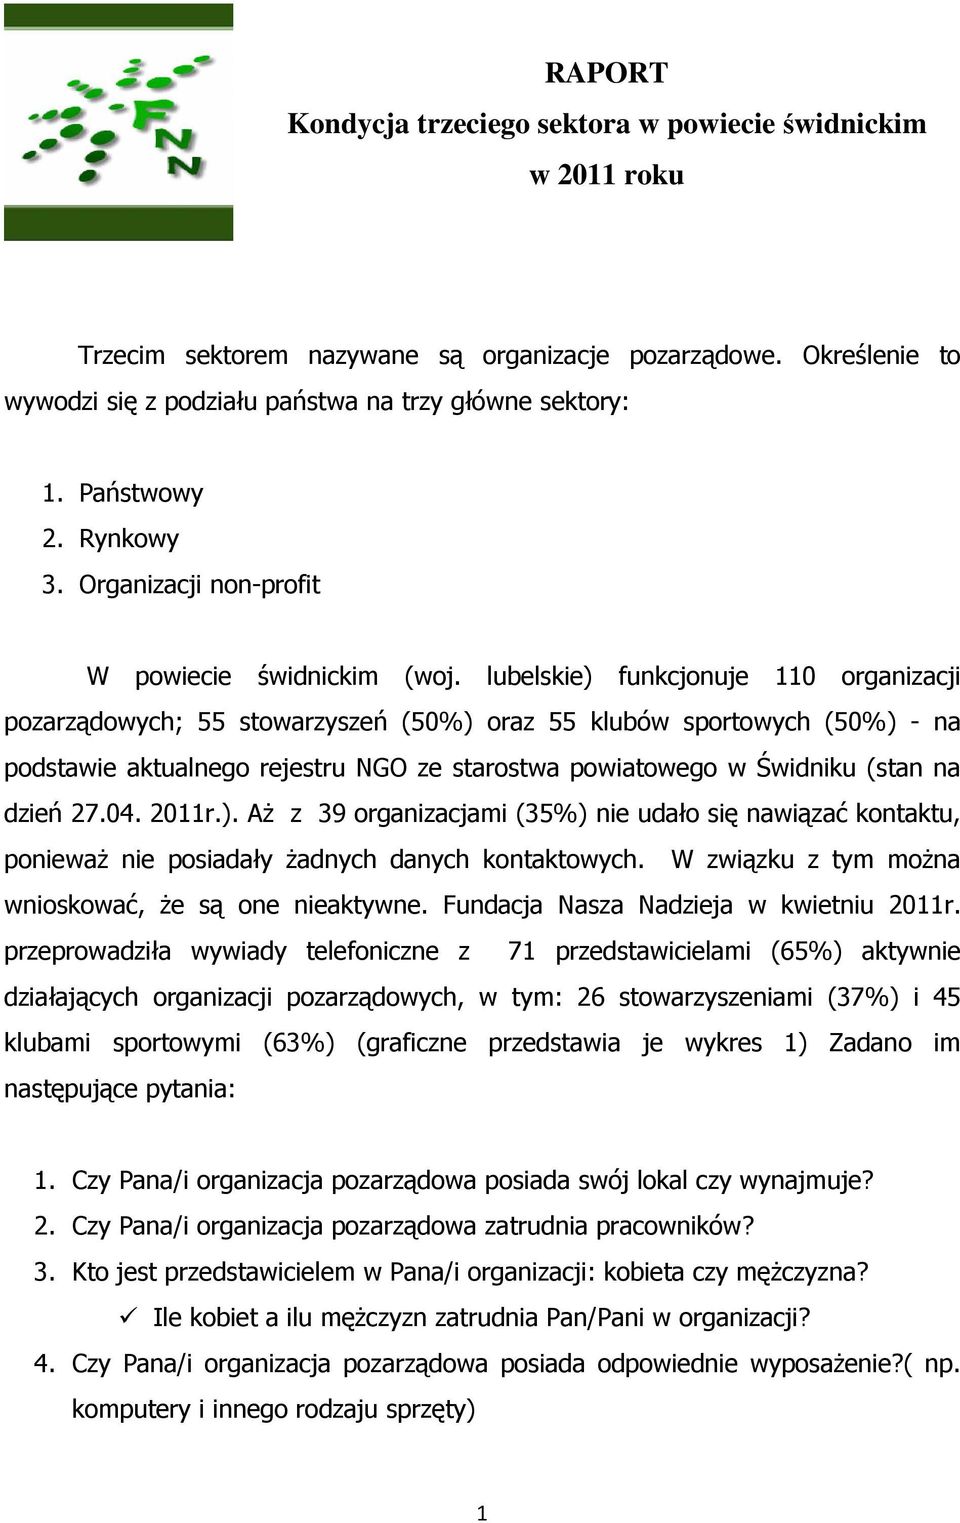 lubelskie) funkcjonuje 110 organizacji pozarządowych; 55 stowarzyszeń (50%) oraz 55 klubów sportowych (50%) - na podstawie aktualnego rejestru NGO ze starostwa powiatowego w Świdniku (stan na dzień